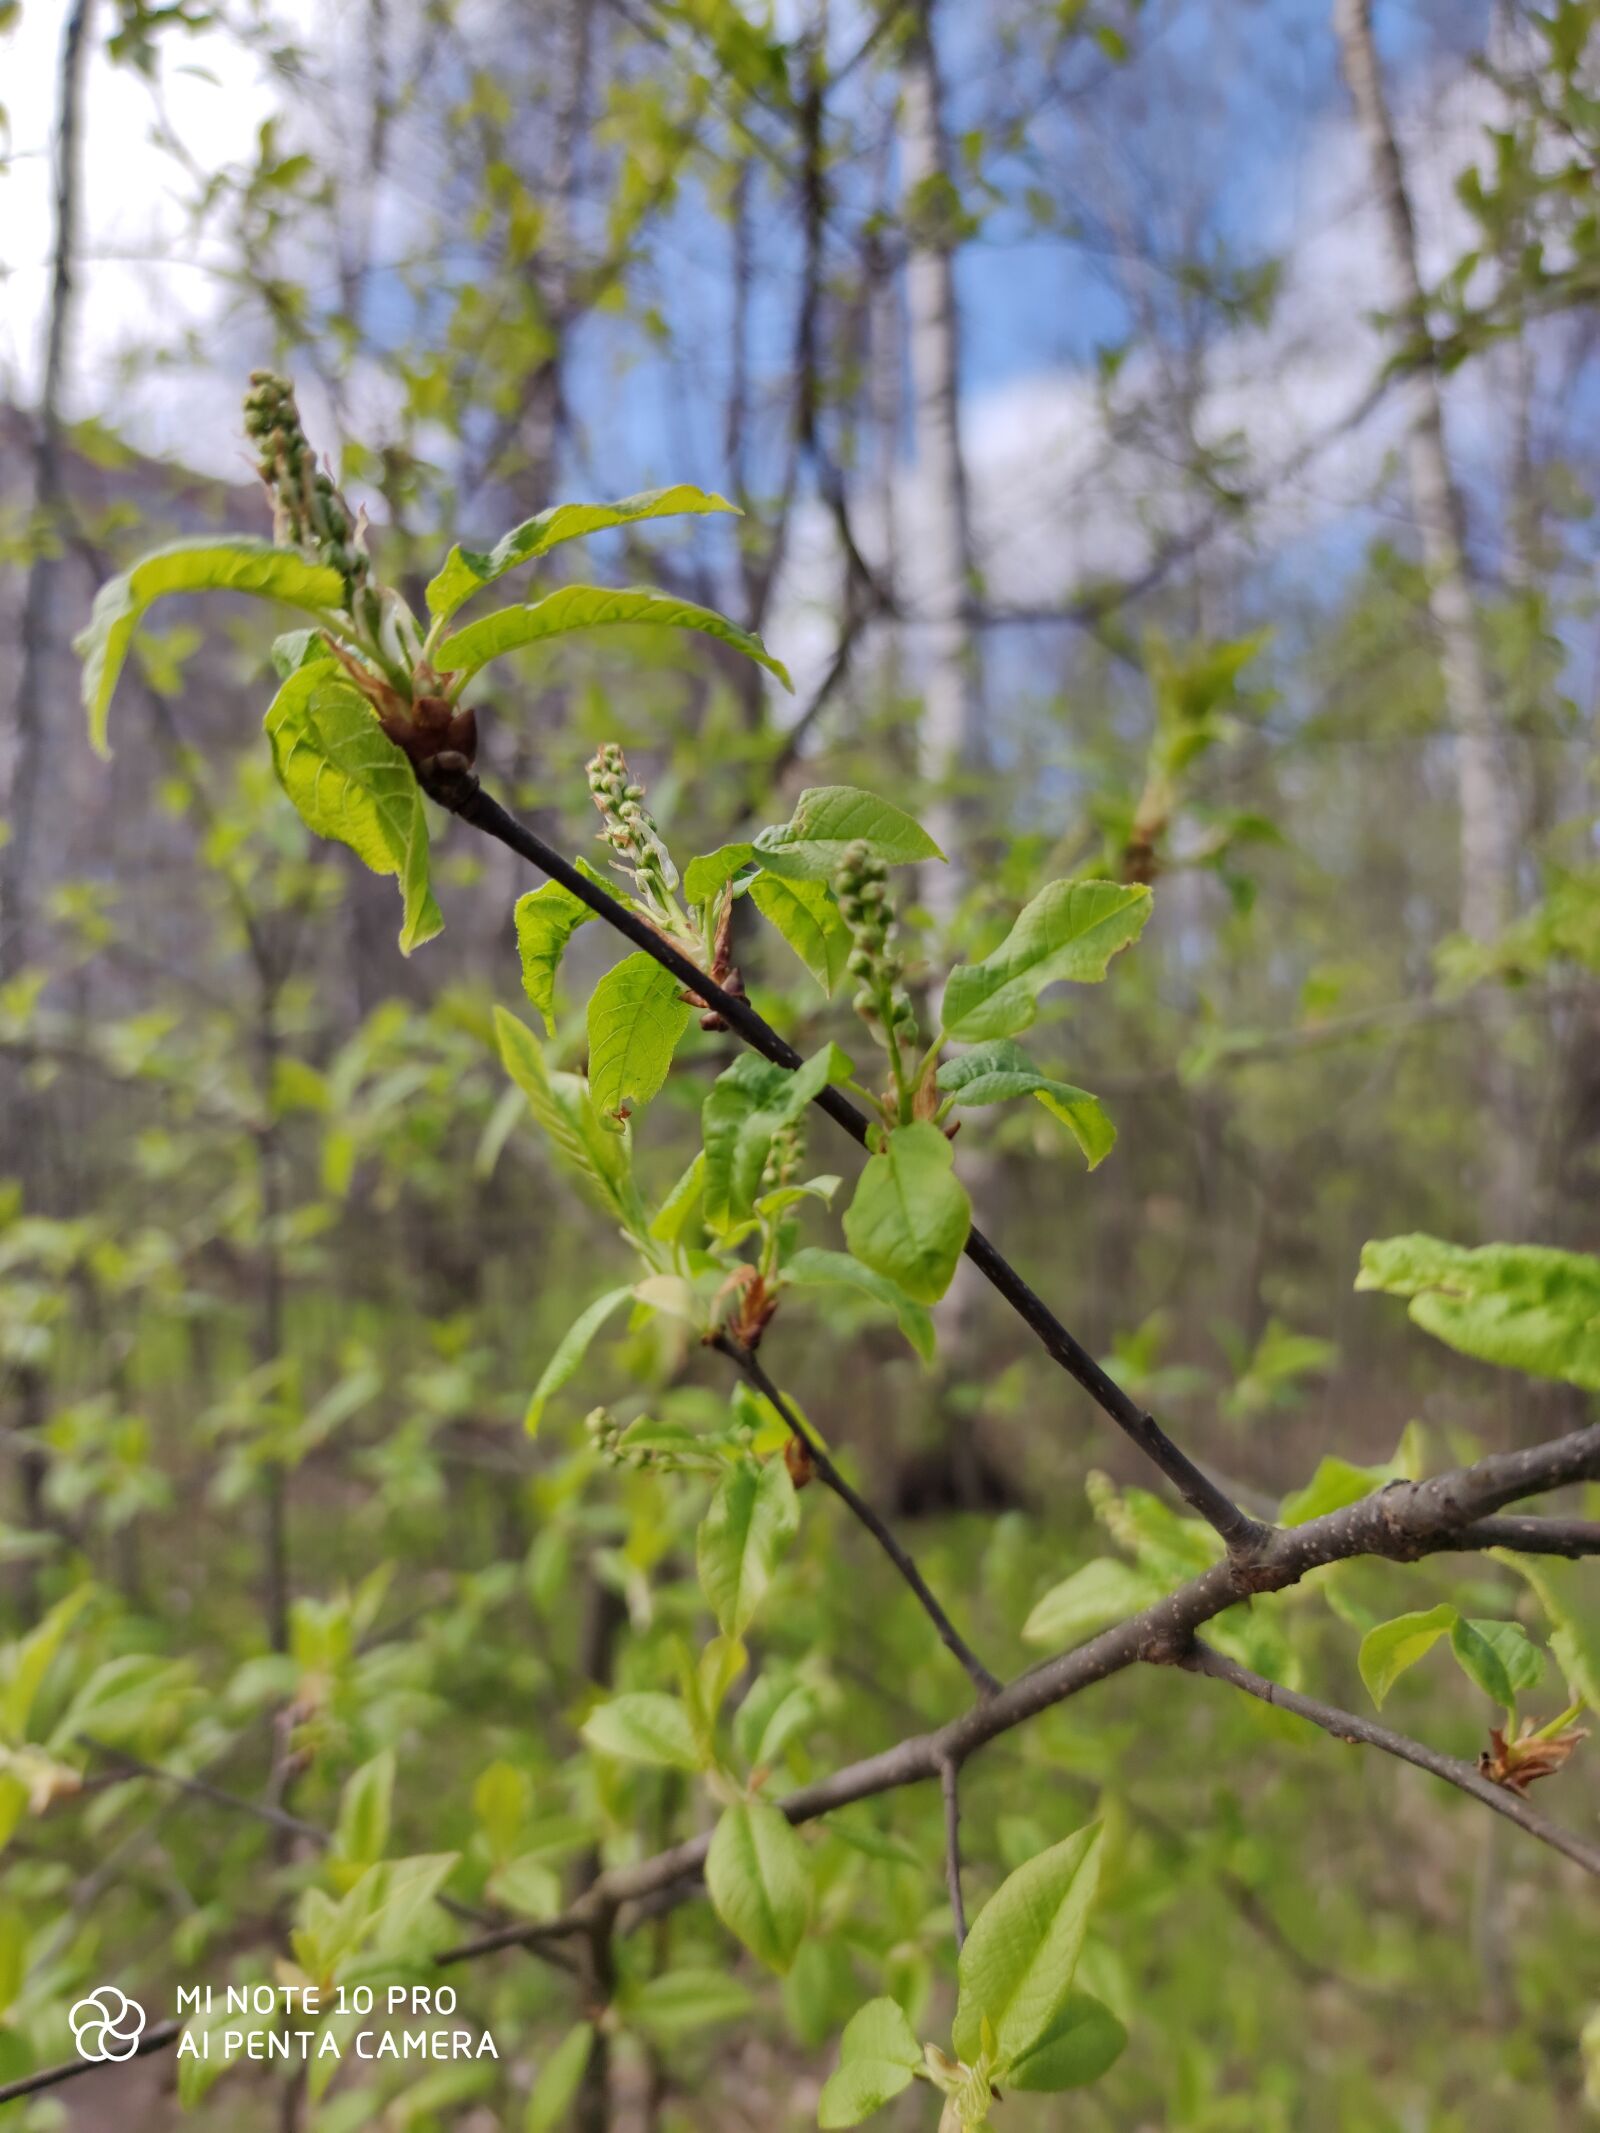 Xiaomi Mi Note 10 Pro sample photo. весна, дерево, природа photography